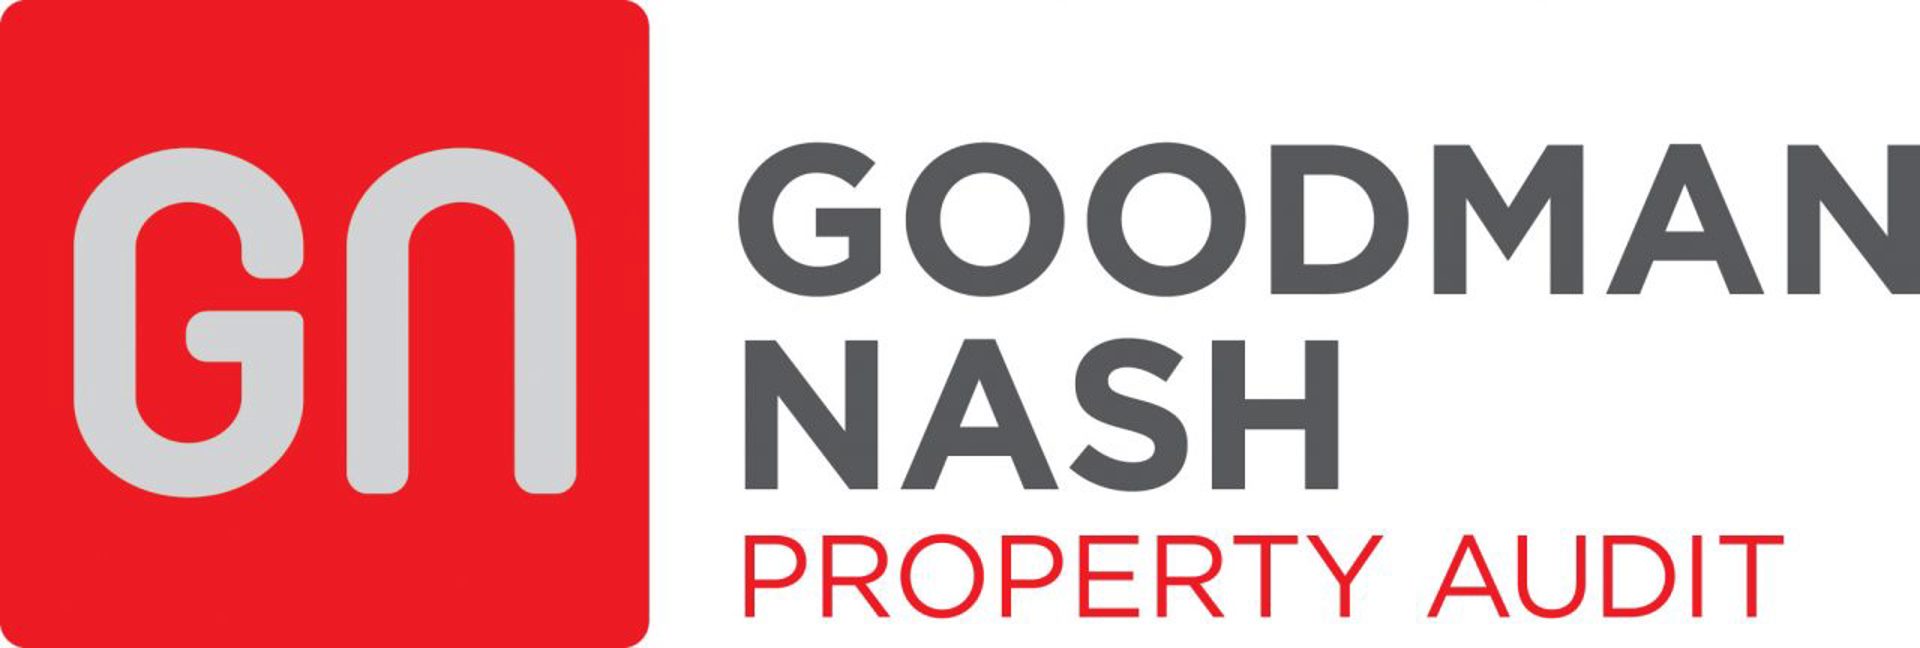 Goodman Nash logo